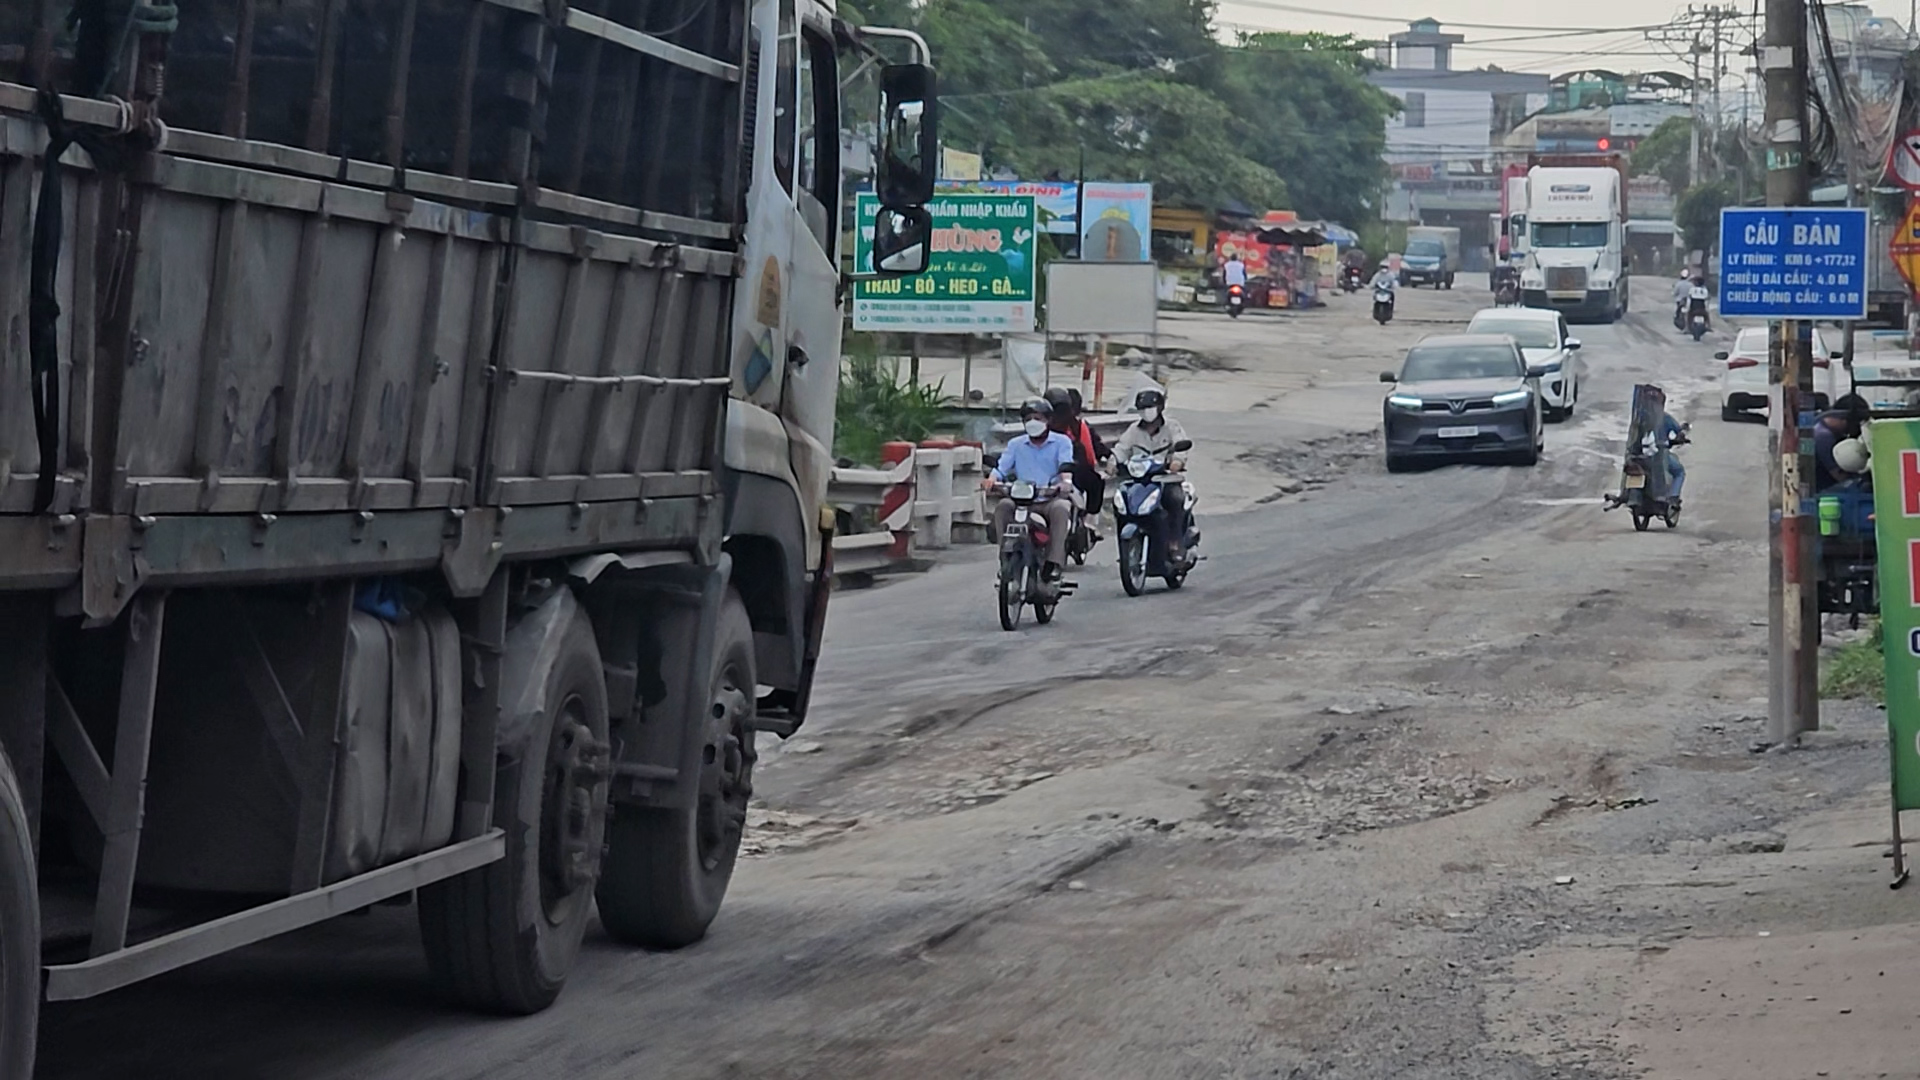 Con đường Hoàng Văn Bổn đầy thương tích vẫn 'cõng' nhiều xe cộ - Ảnh 3.